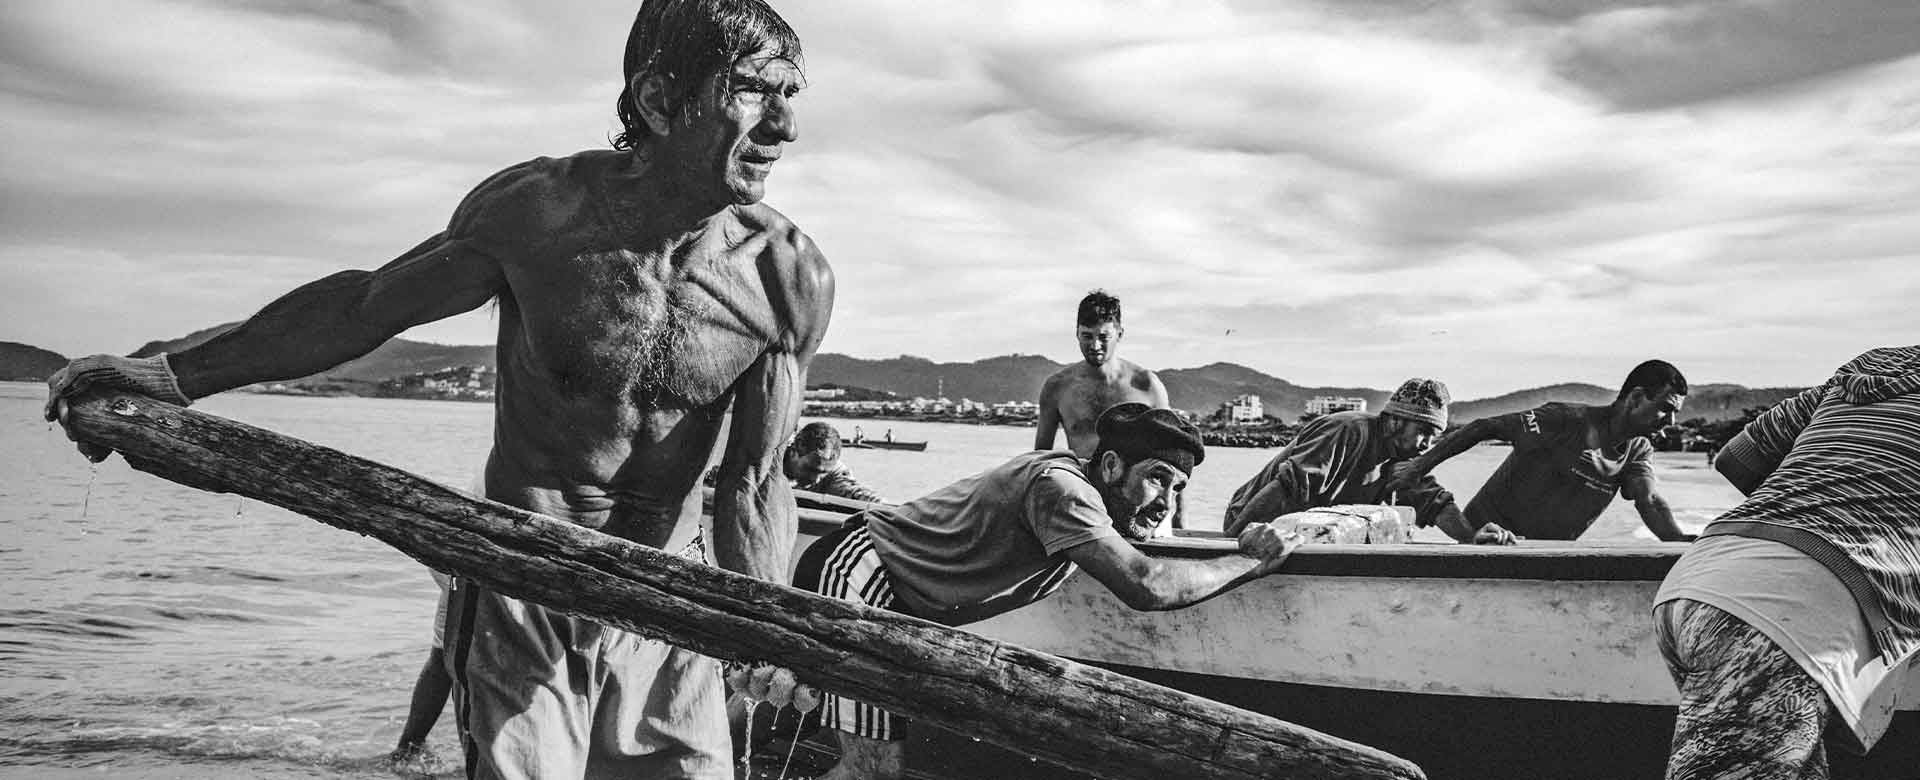 Immagine di pescatori che rientrano nella baia di Guanabara, in Brasile